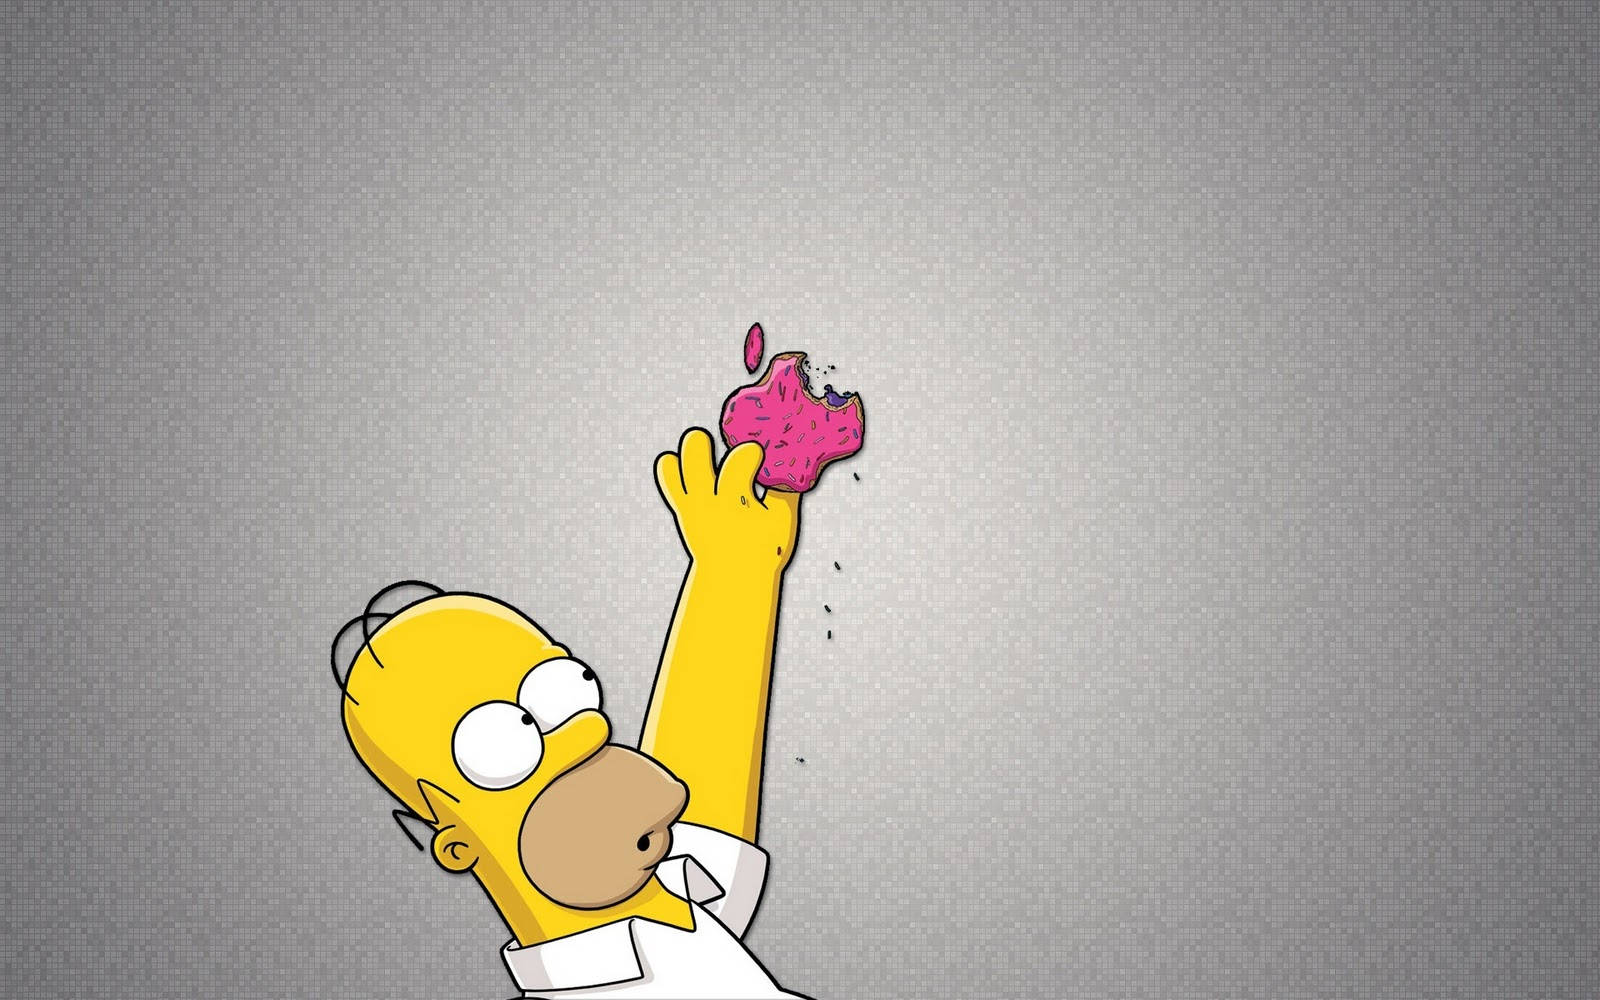 Homersimpson Macht Ein Lustiges Gesicht. Wallpaper